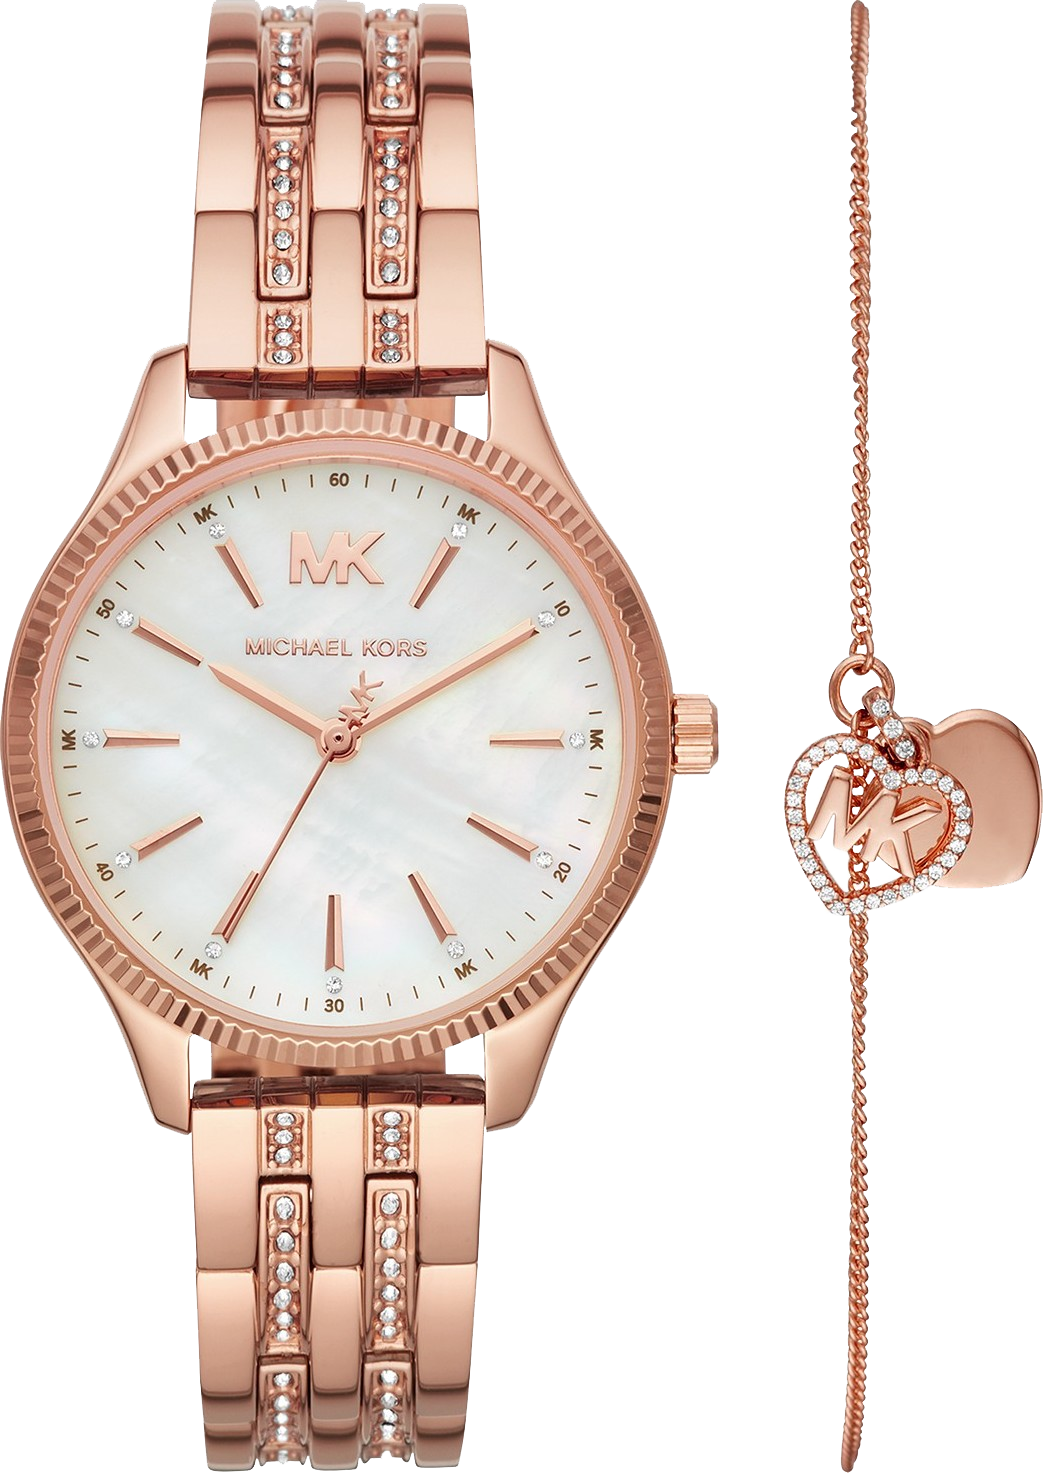 Michael Kors MK4493 Lexington Rose Gold Watch 36mm